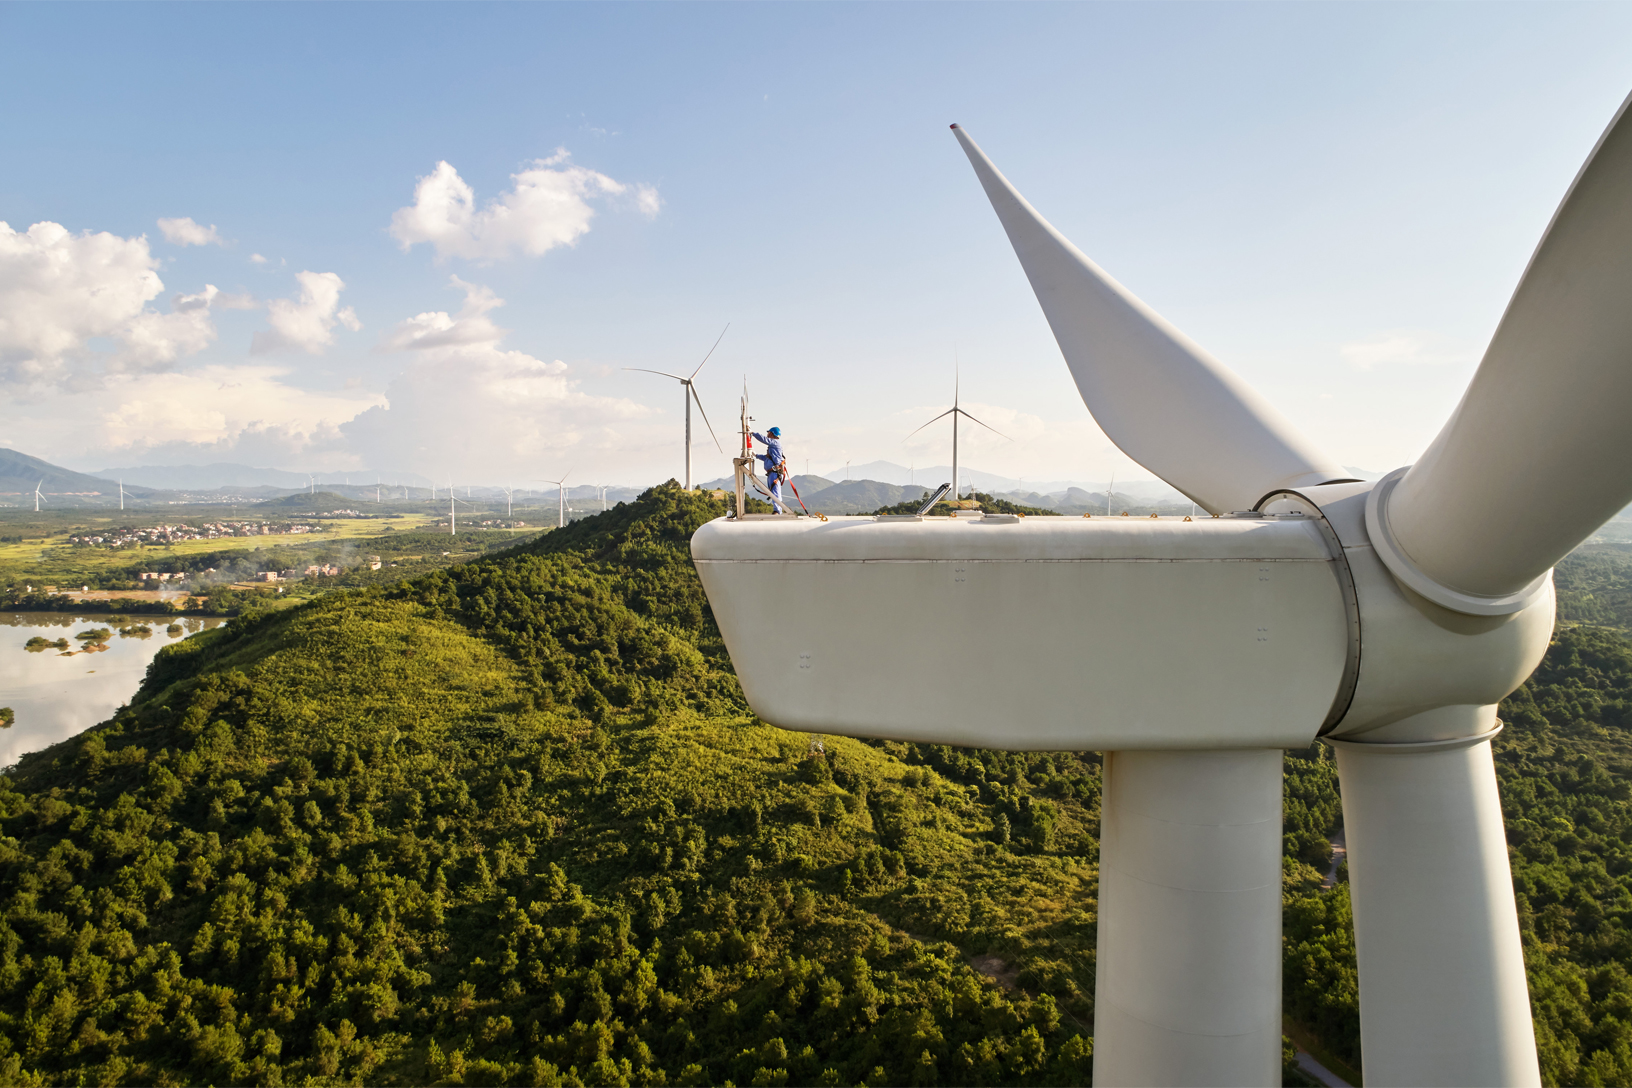 Investimentos globais da China em energia renovável avançam. Na imagem: Trabalhador realiza inspeção no alto de turbina eólica gigante no parque eólico Concord Jing Tang (48 MW), no Condado de Dao em Hunan, na China, desenvolvido pelo Concord New Energy Group (Foto: Divulgação)